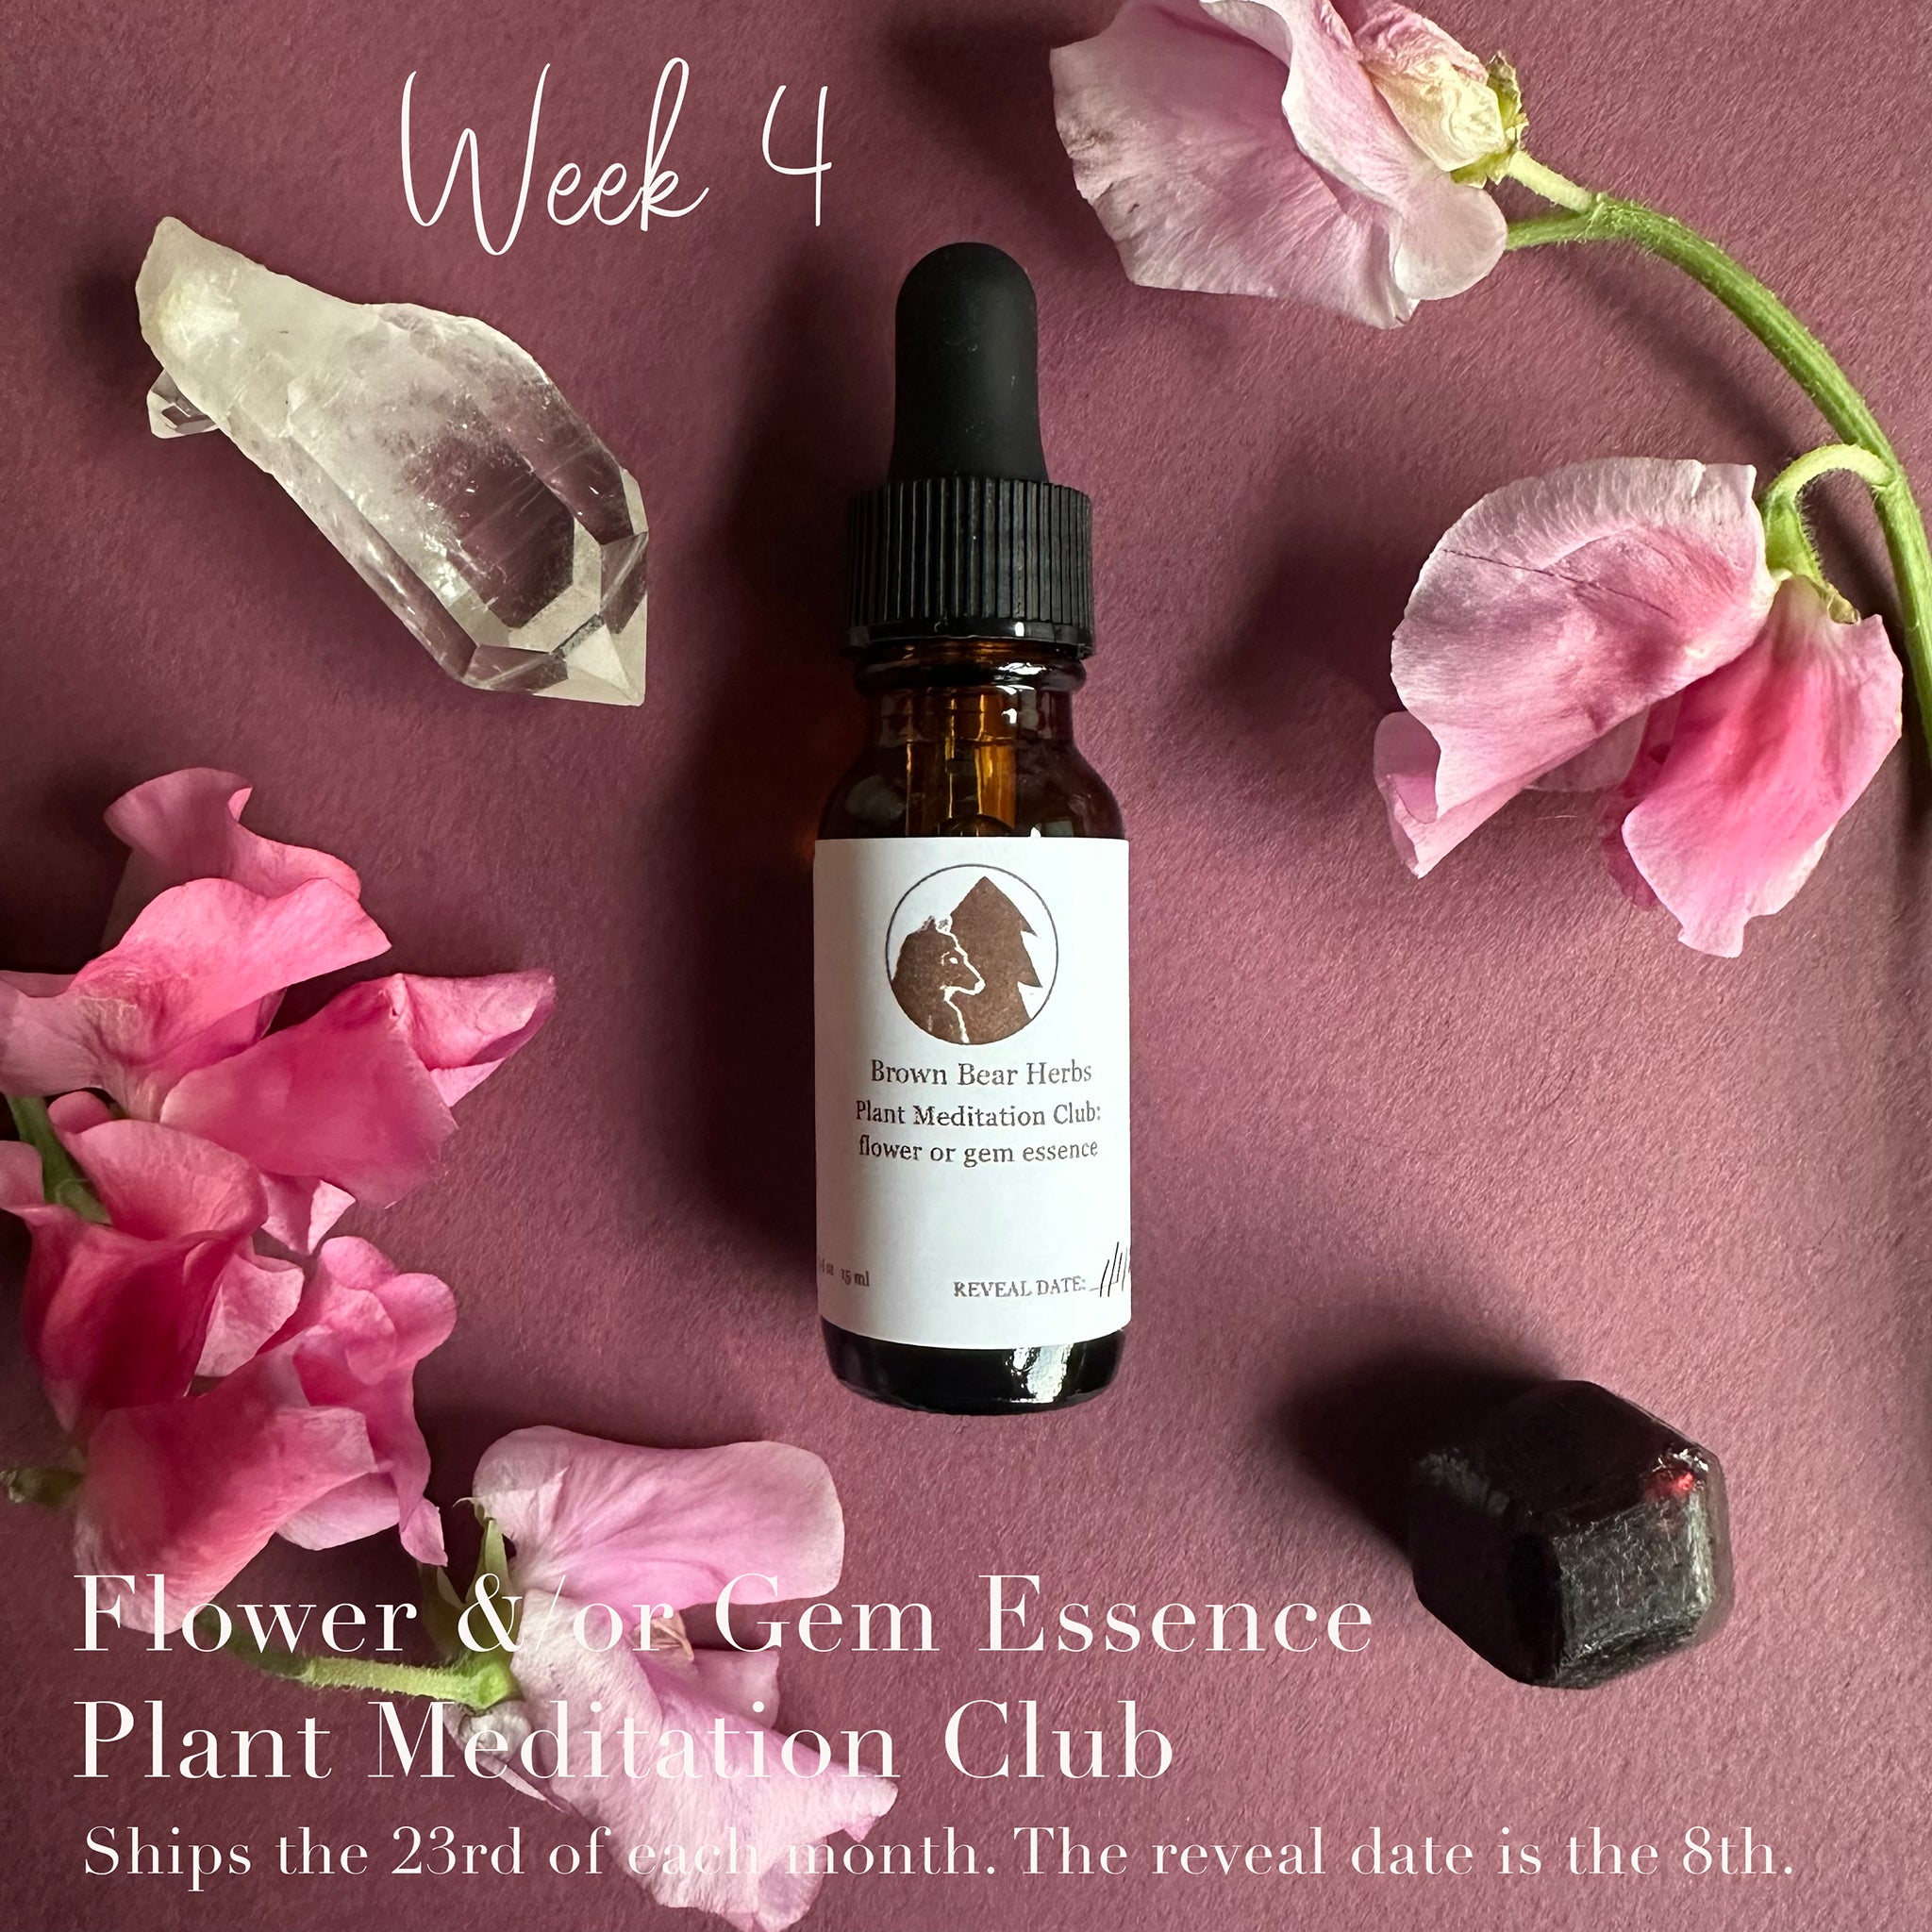 Plant Meditation Club: Flower or Gem essence, week 4.